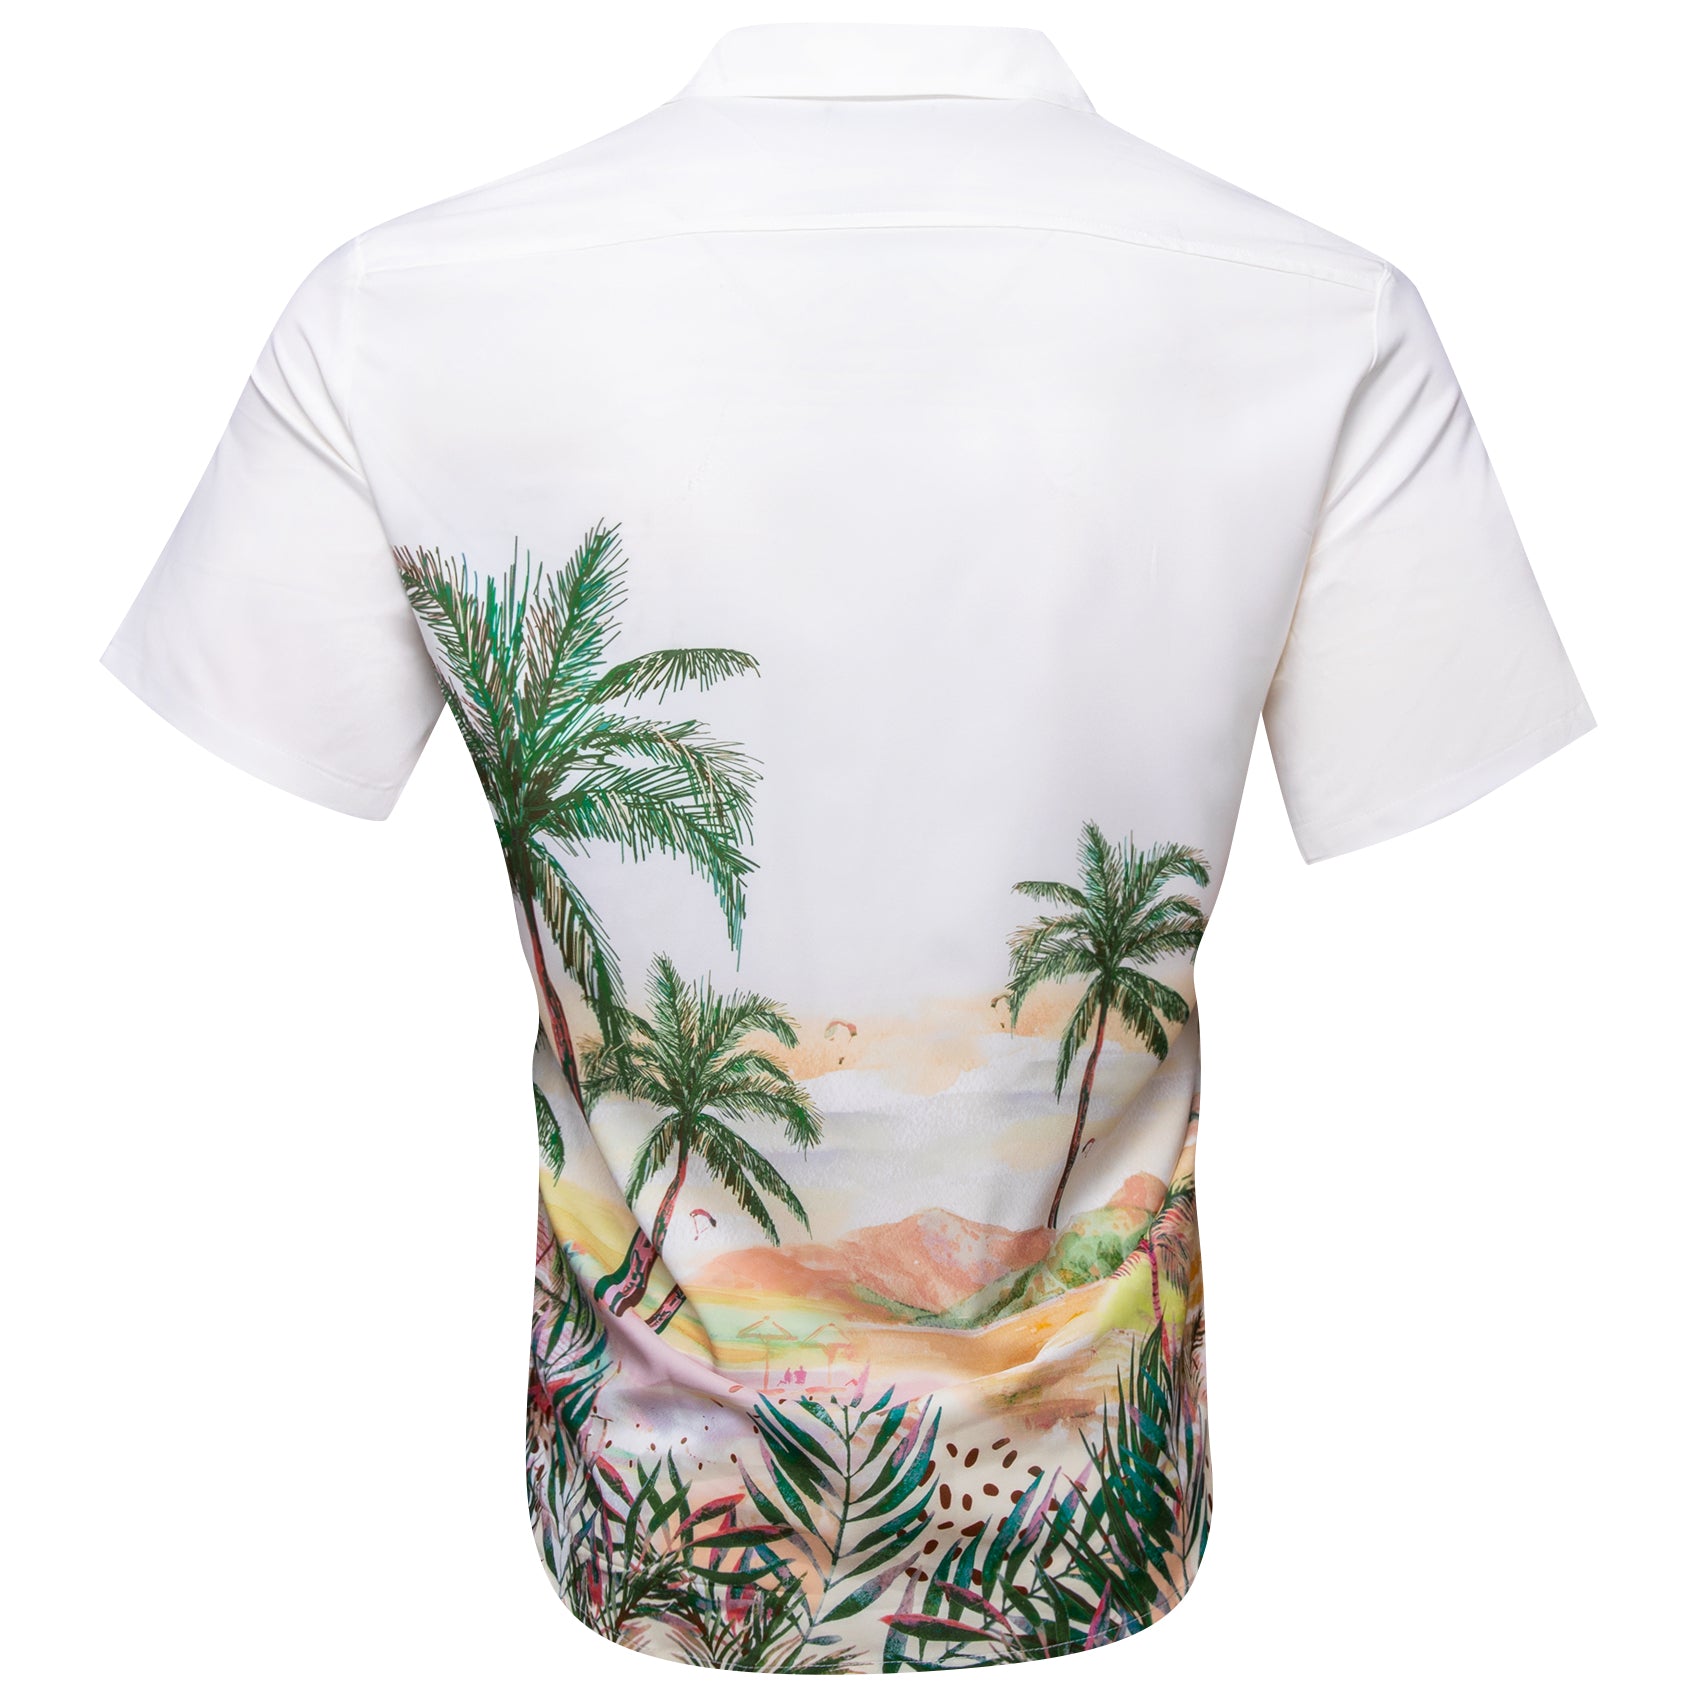 Barry Wang Hawaiian Shirts Sunset Coconut Trees Mens Printed White Shirts